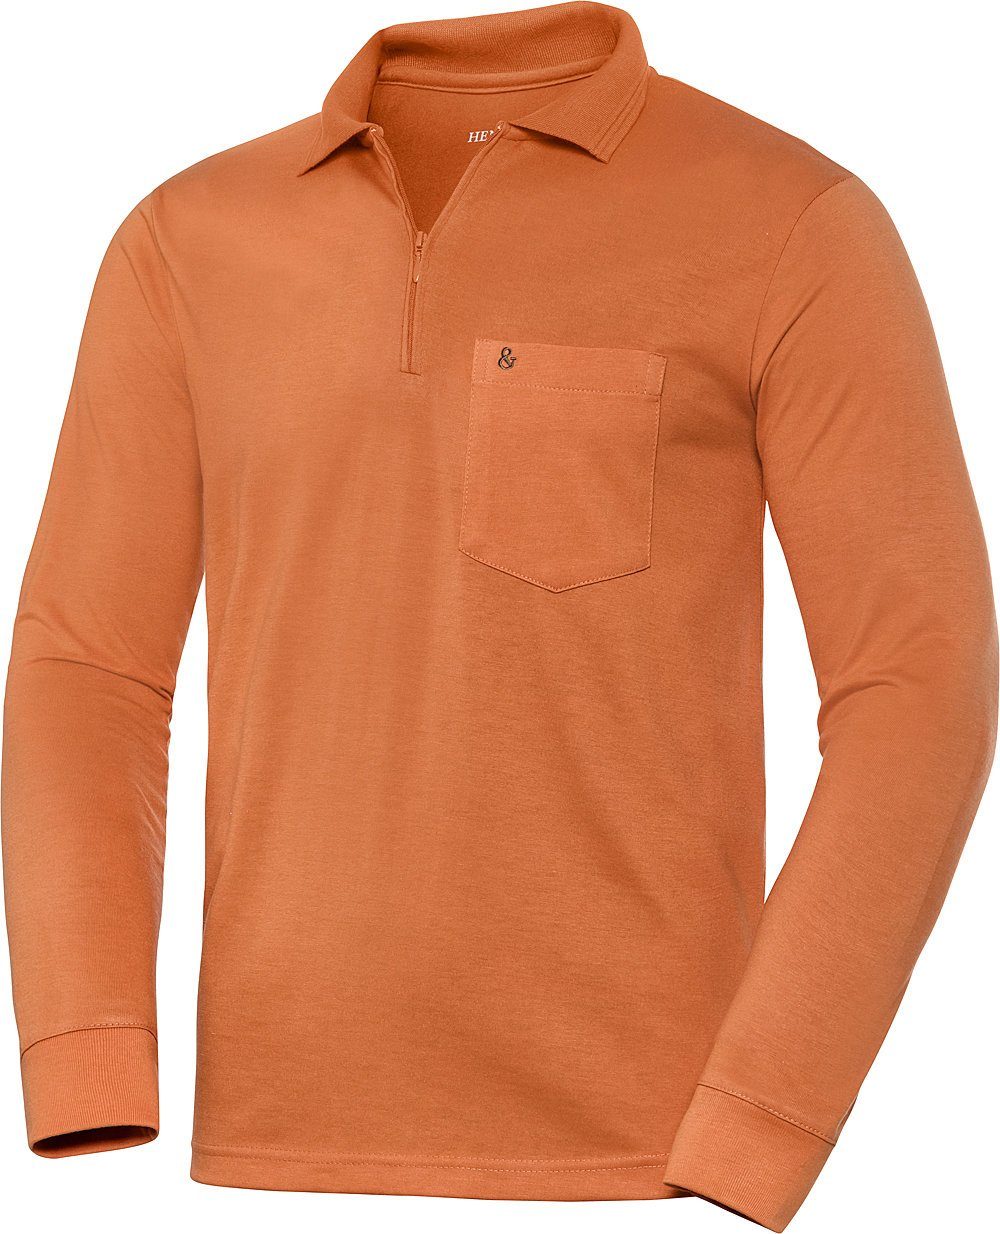 HENSON&HENSON Langarm-Poloshirt superweiches orange Jersey-Gewebe